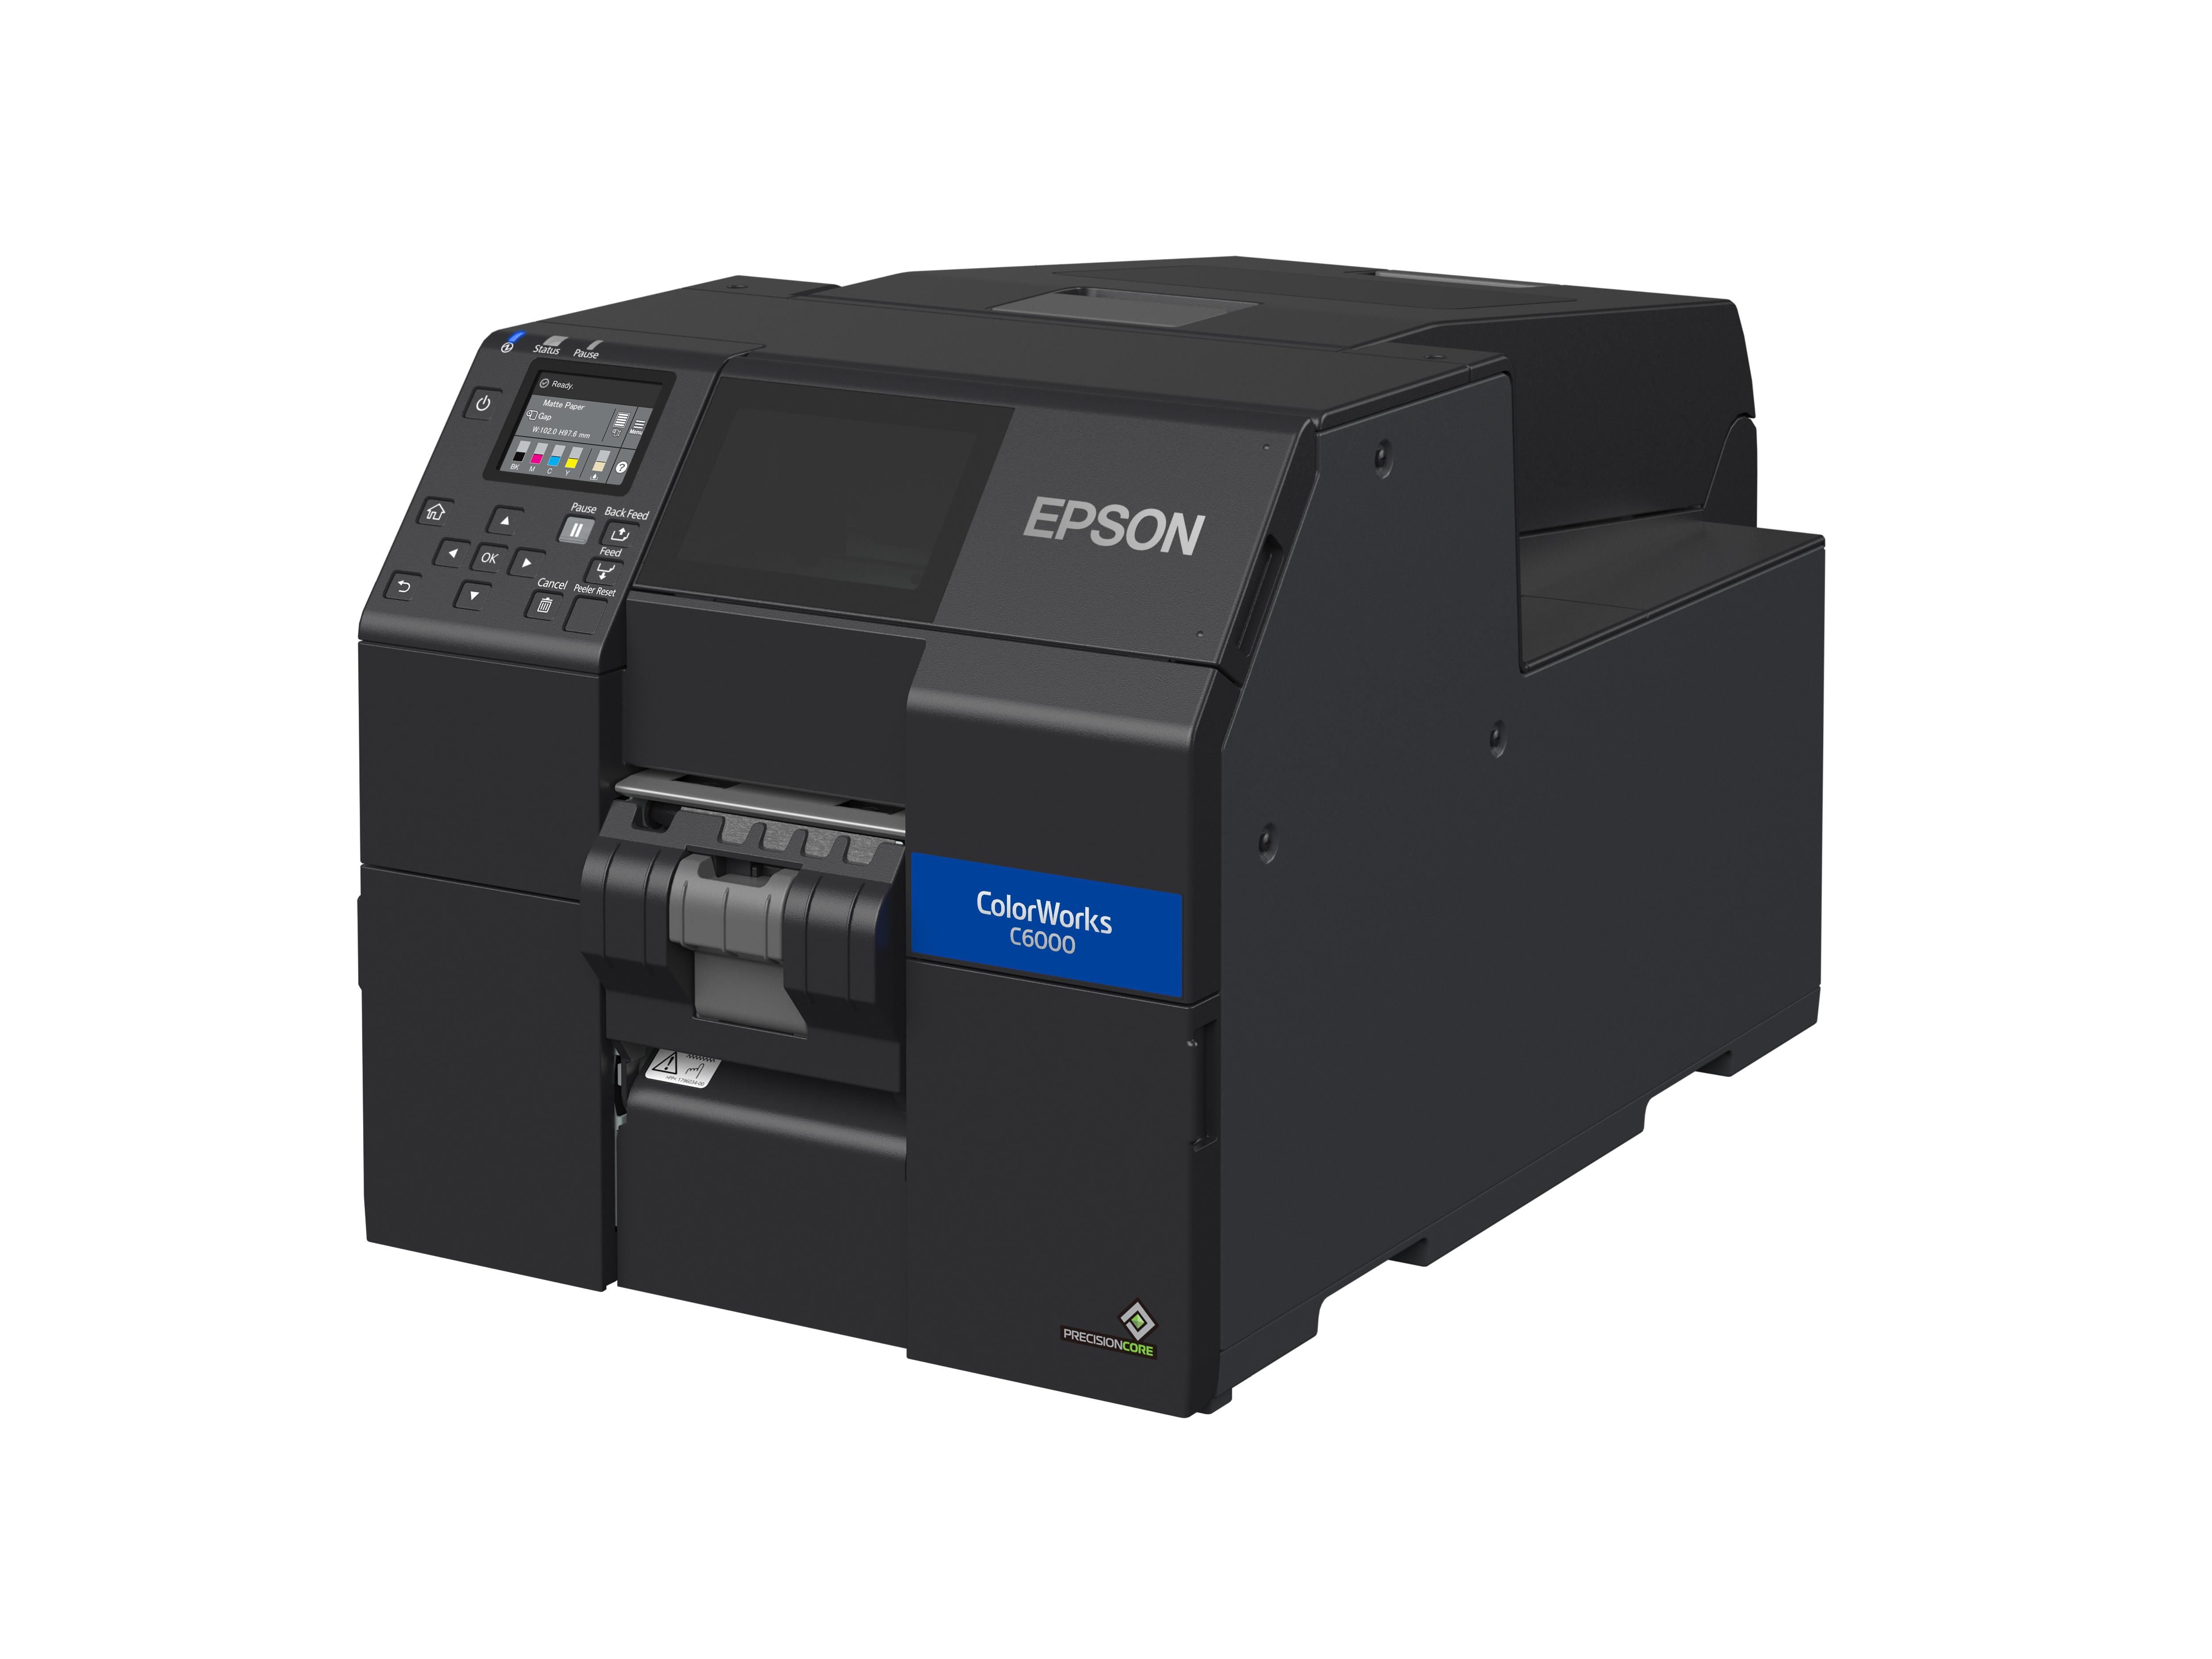 Epson ColorWorks CW-C6000Pe Stampante